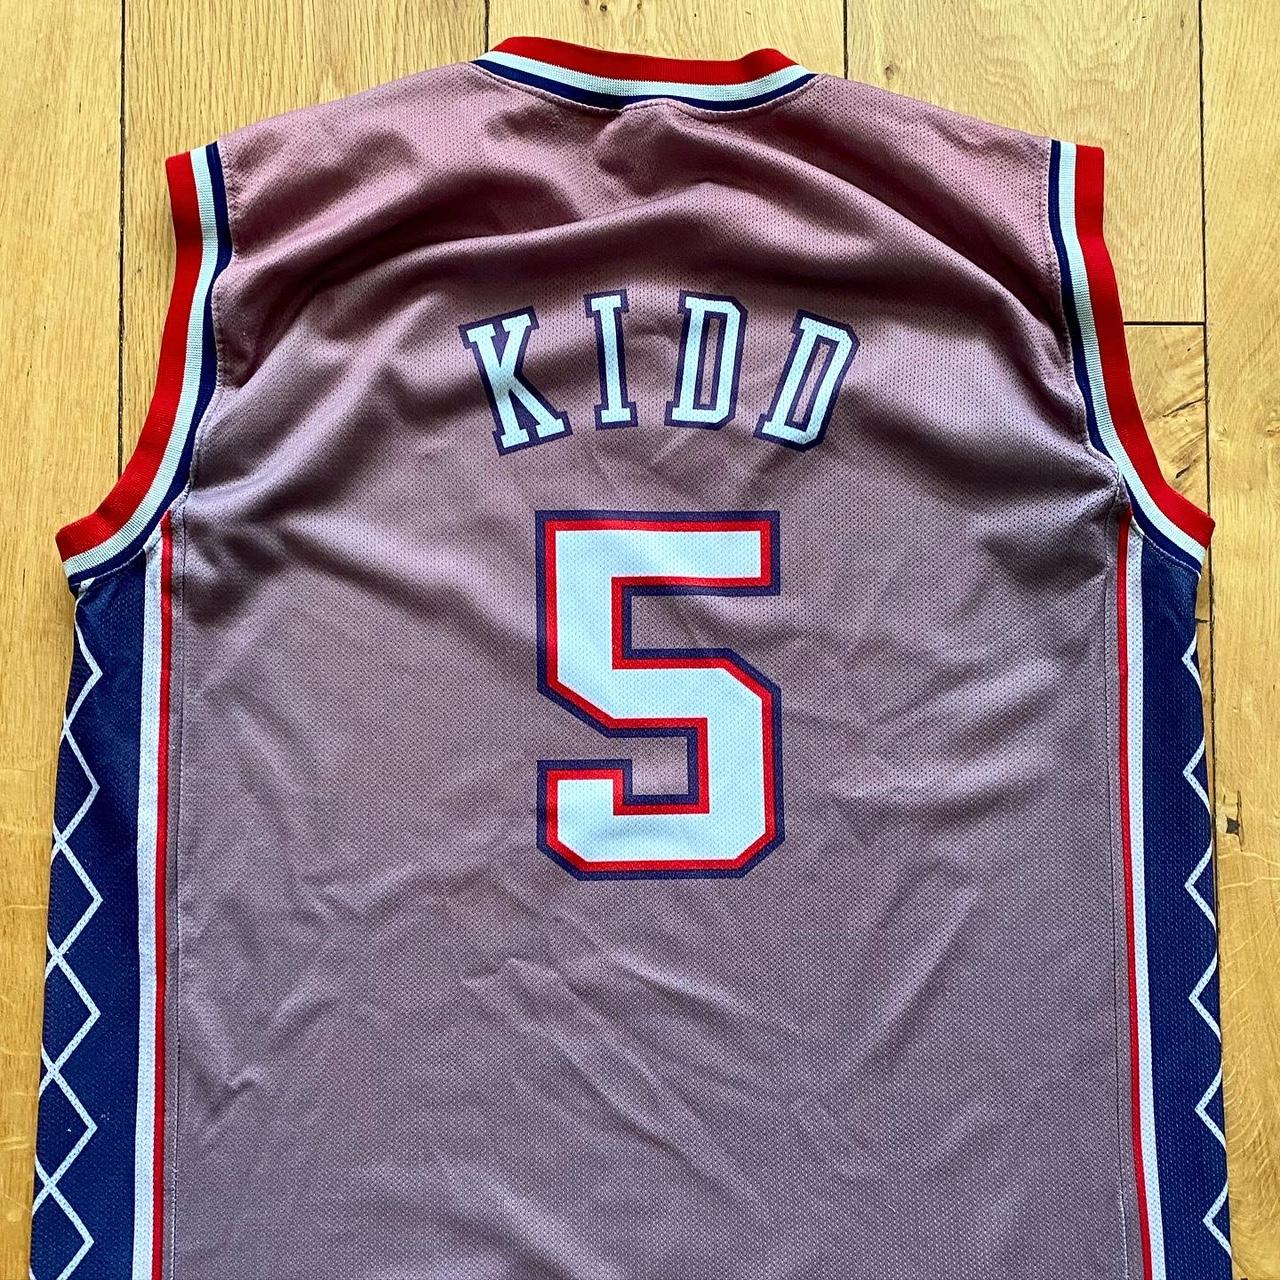 2002 NBA finals New Jersey Nets Jason Kidd - Depop